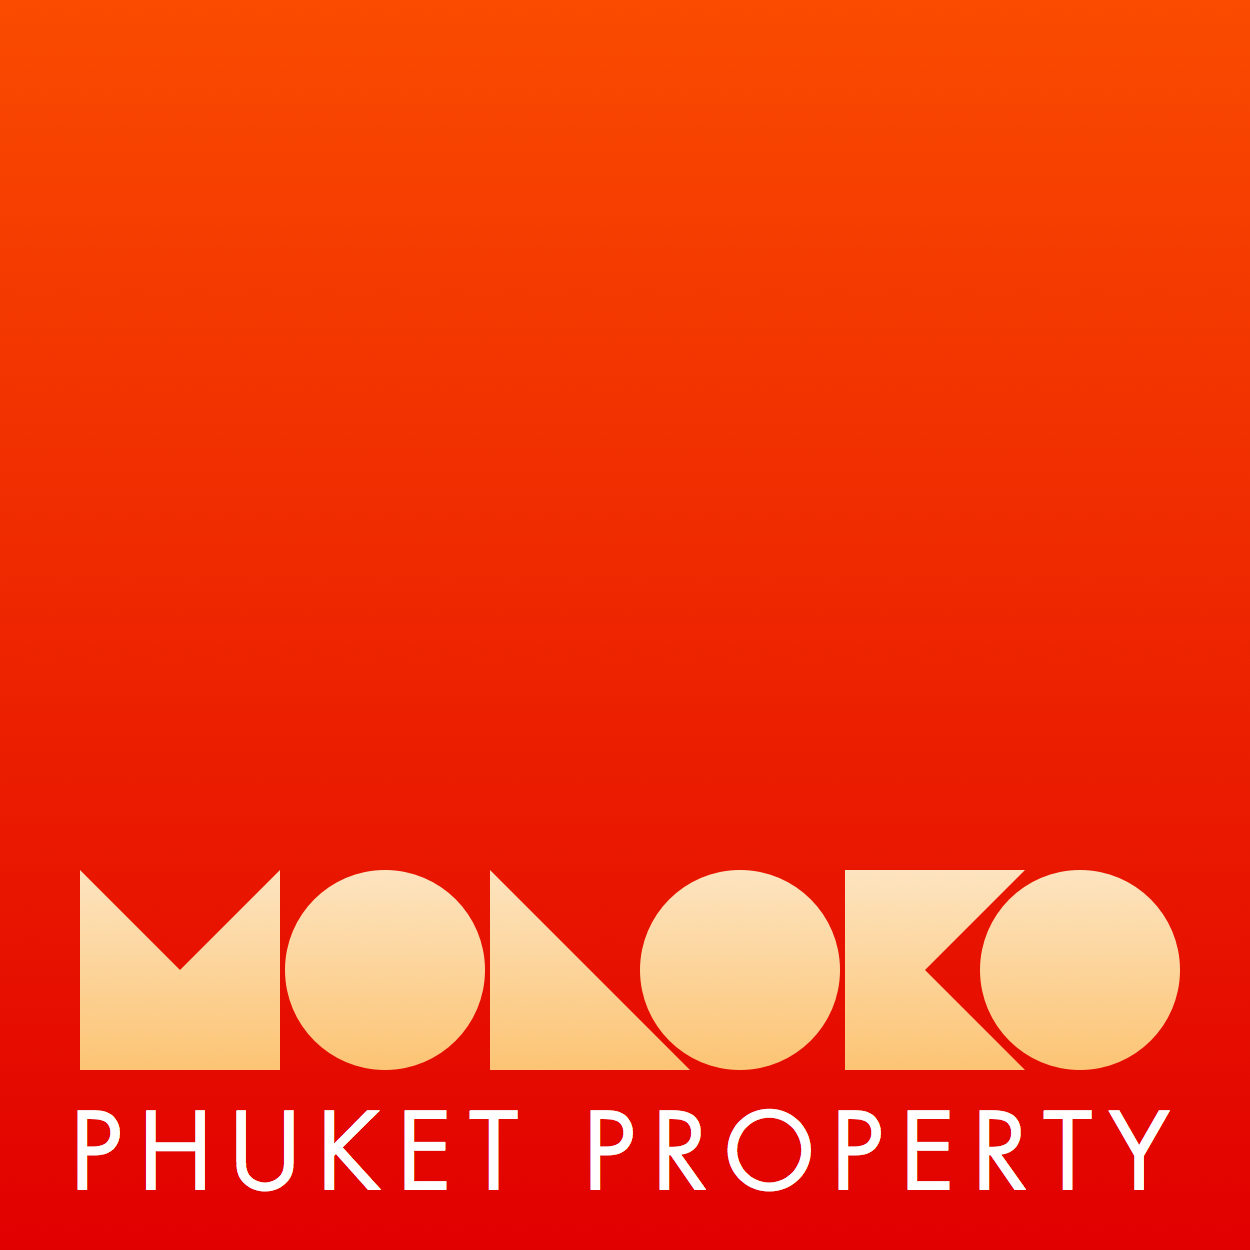 Moloko Property Phuket